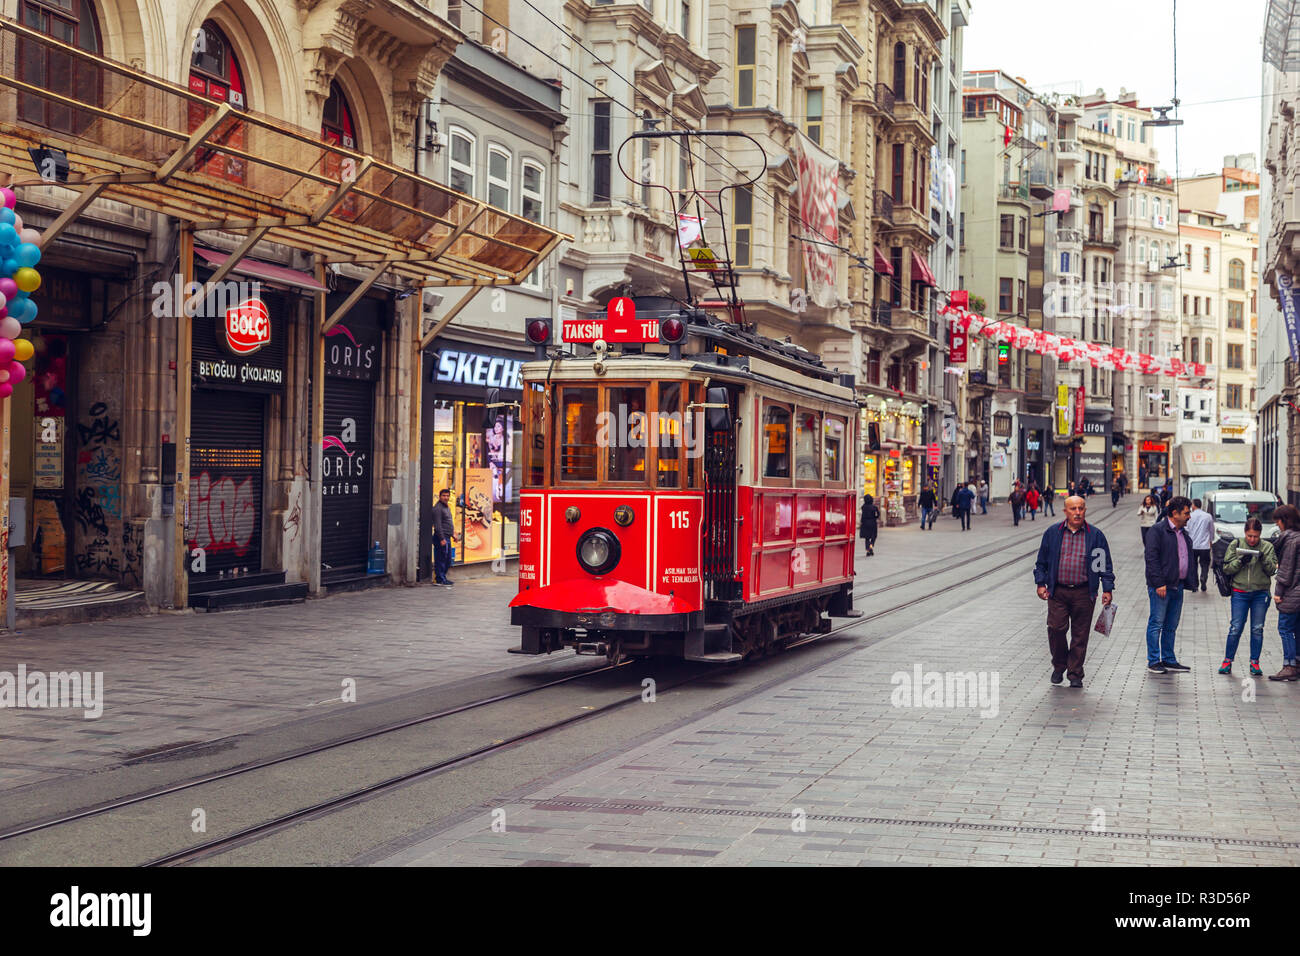 Rosso nostalgico retrò tram sulla famosa Via Istiklal. ISTANBUL, Turchia - 13 novembre 2018. Foto Stock